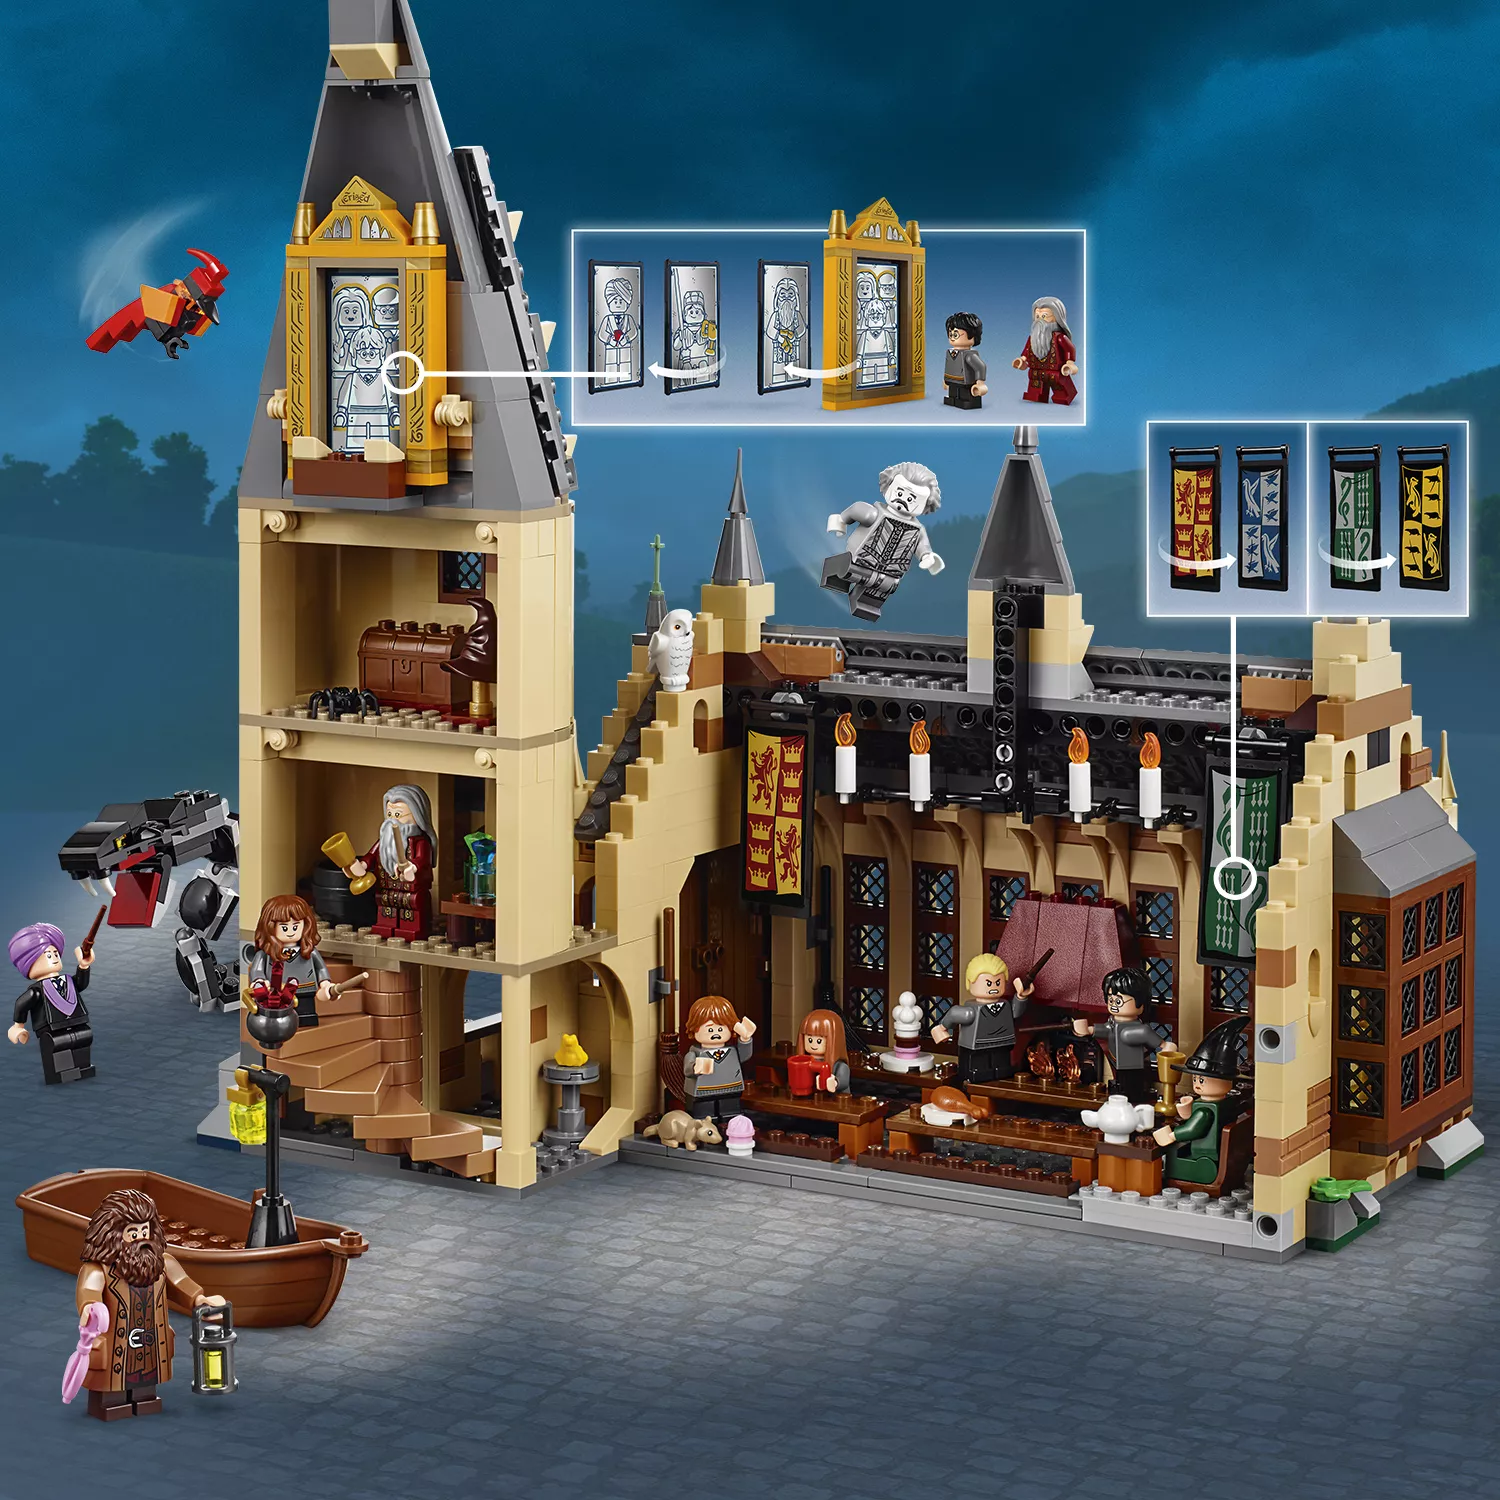 LEGO Harry Potter Die große Halle von Hogwarts - 75954